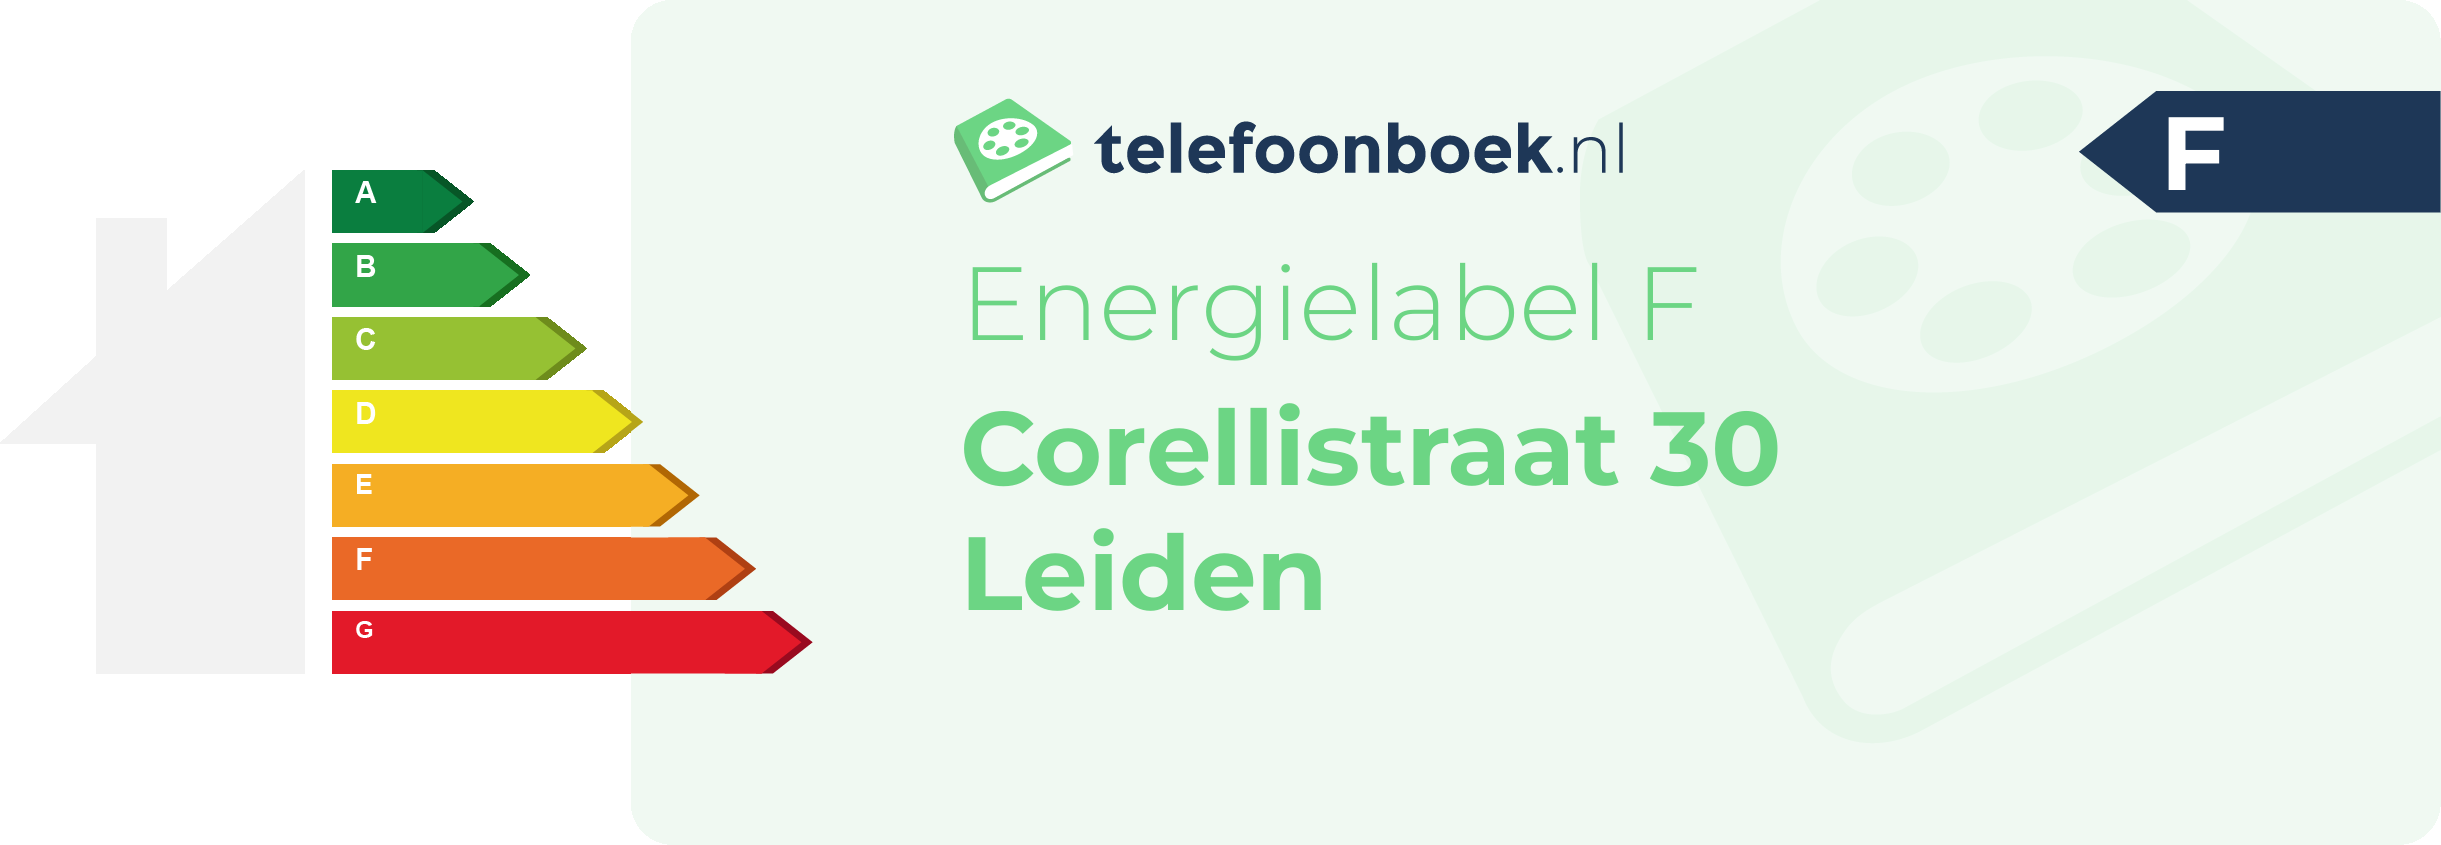 Energielabel Corellistraat 30 Leiden